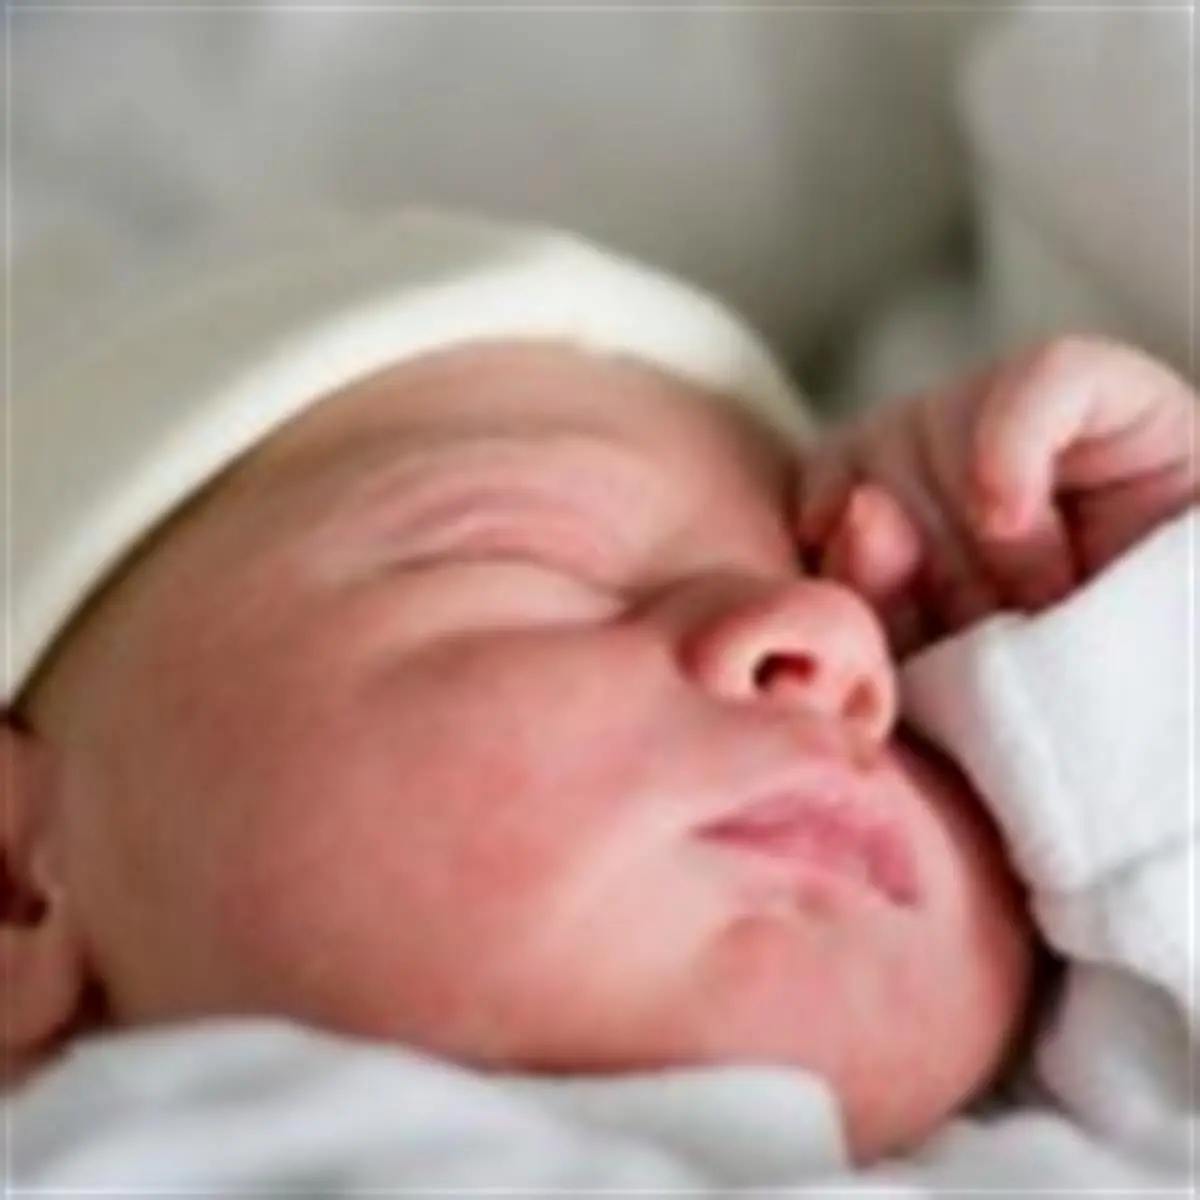 psicologia del recien nacido - Qué estados conductuales son comunes entre los recién nacidos